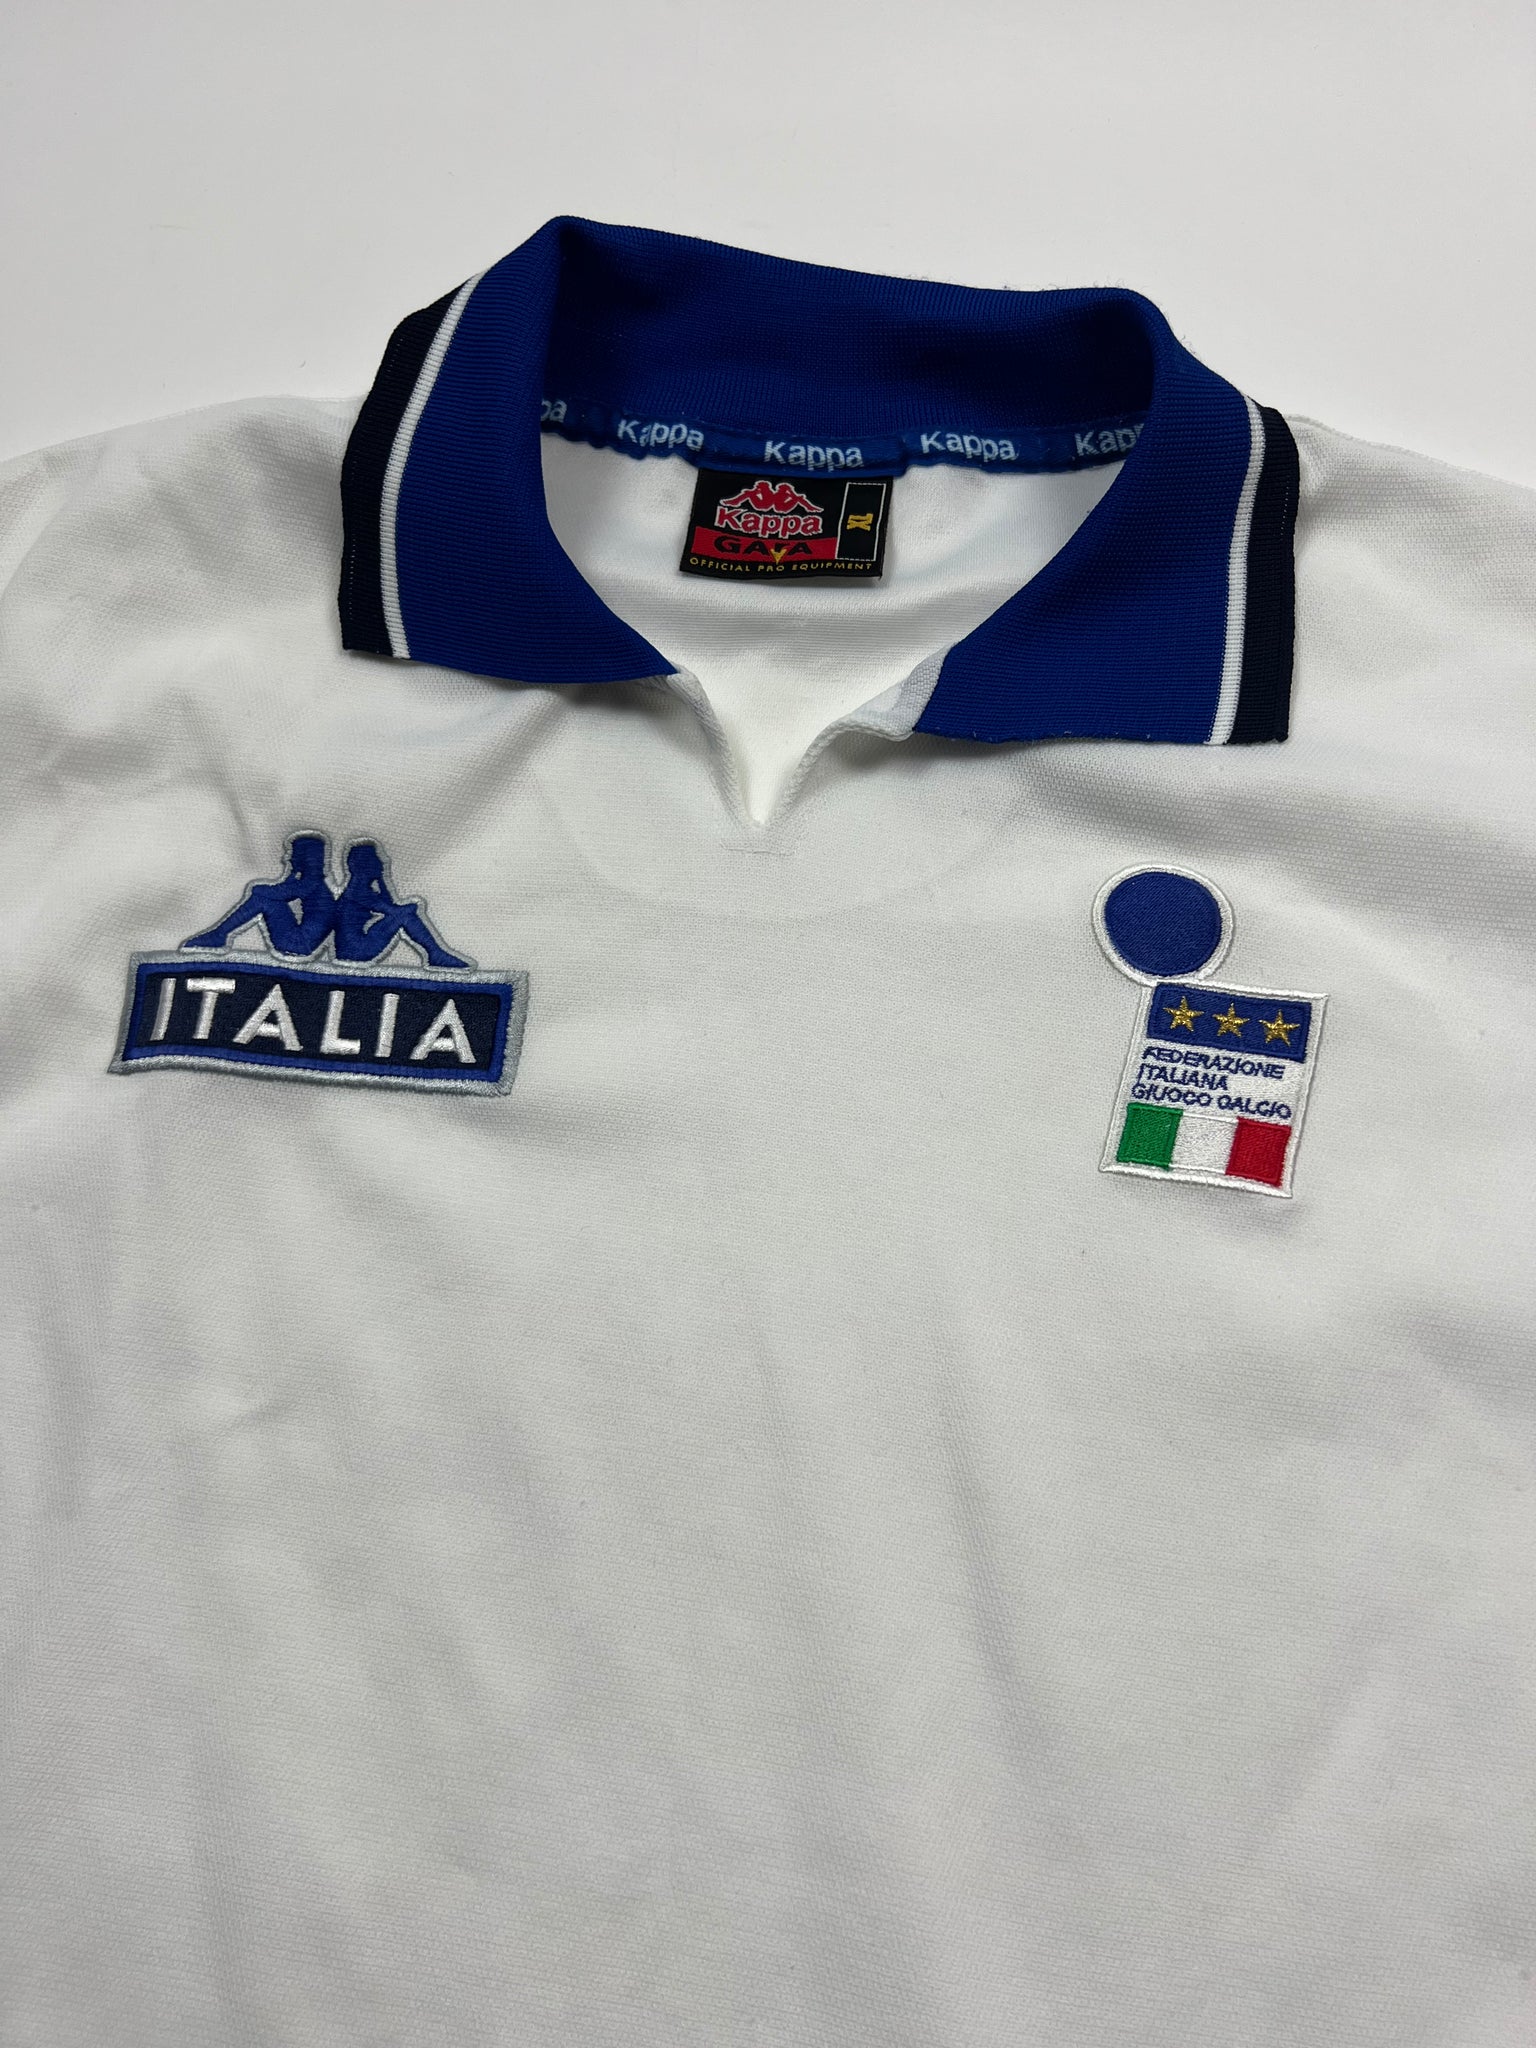 Kappa Italy Jersey (XL)